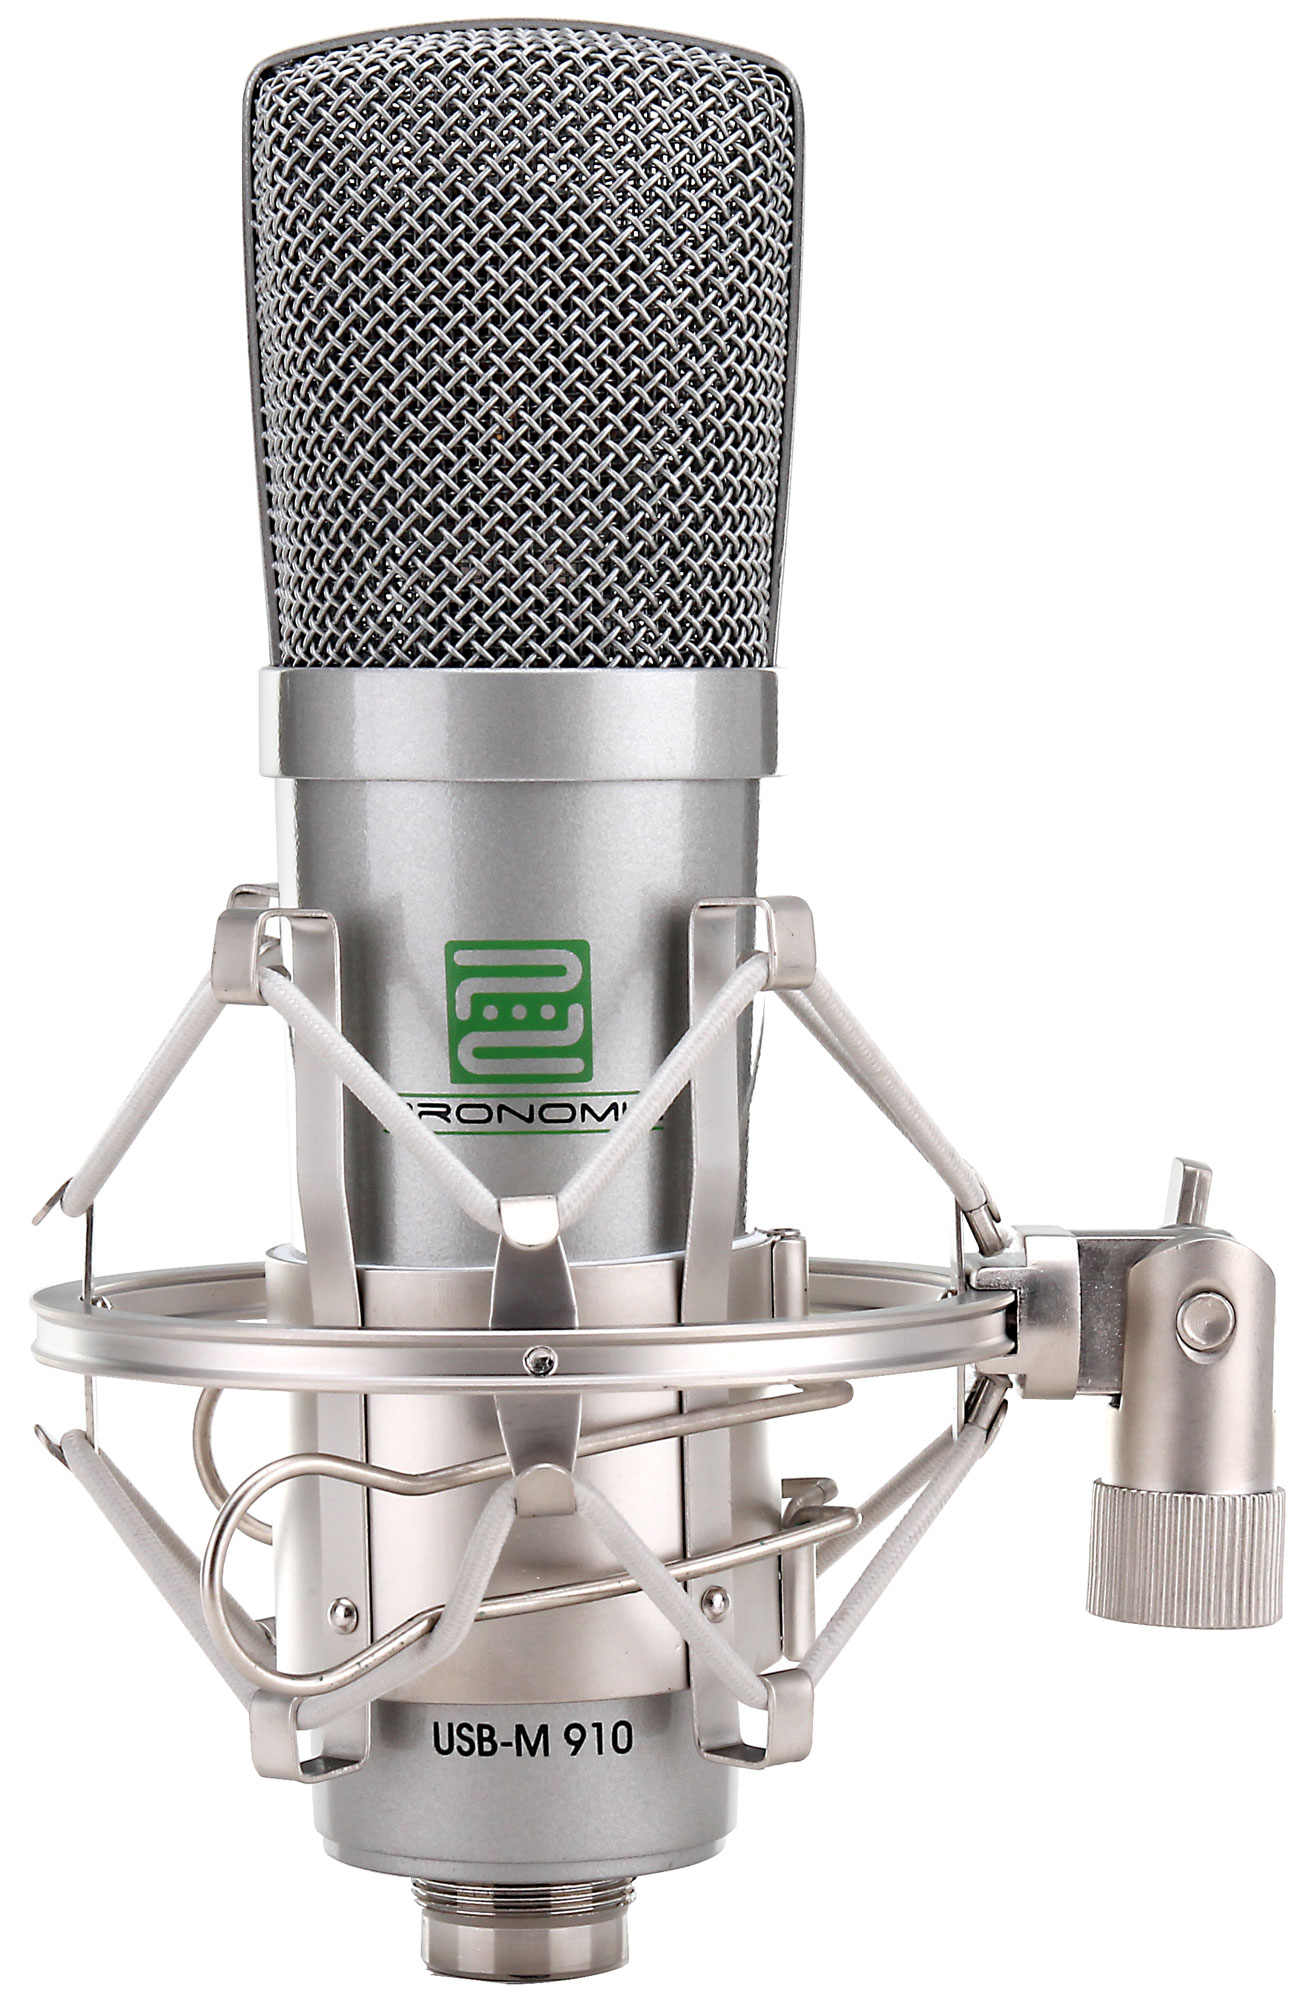 Pronomic USB-M 910 microphone condensateur set complet incl. trépied,  filtre antipop & micscreen